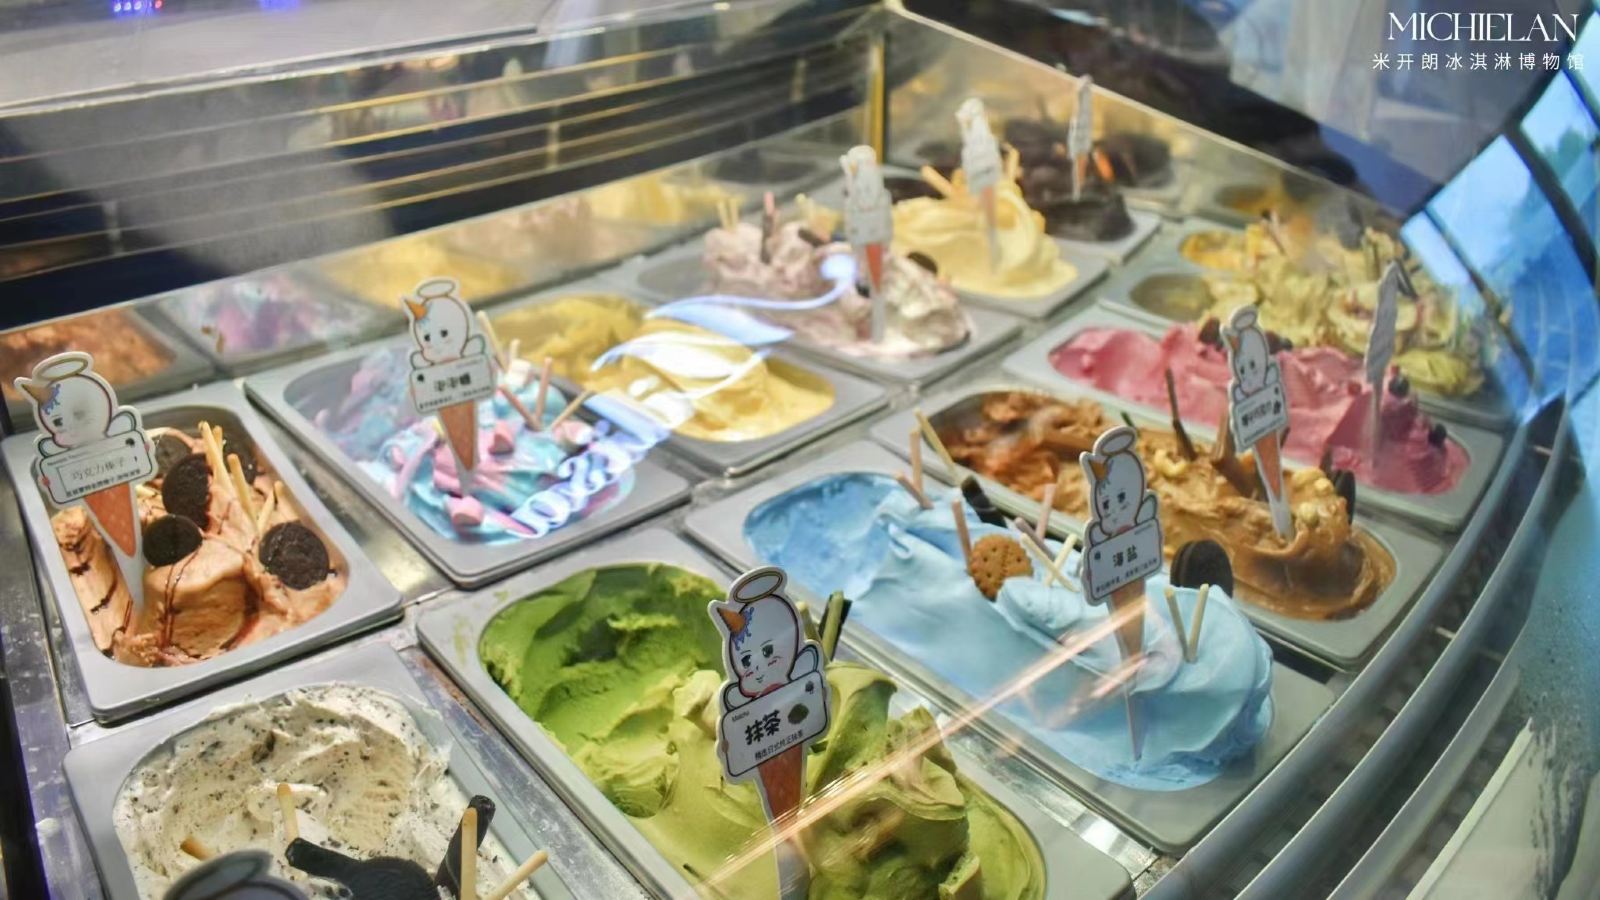 冰淇淋博物馆11.jpg